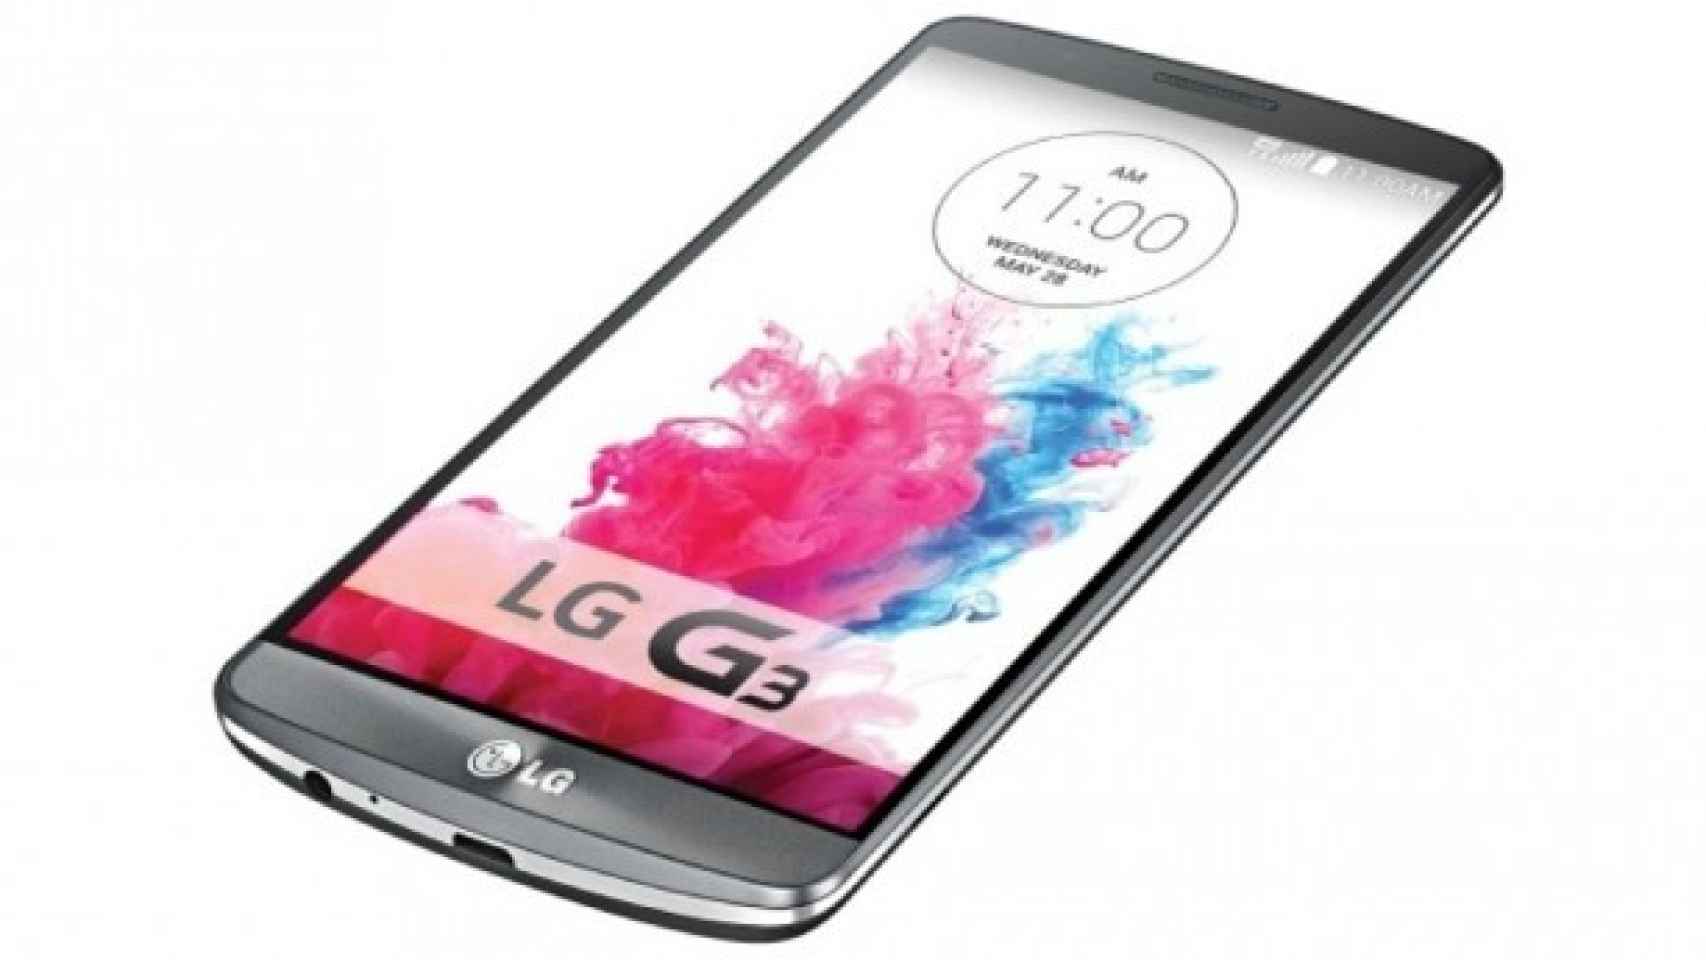 Controla los permisos de las aplicaciones con esta opción oculta del LG G3